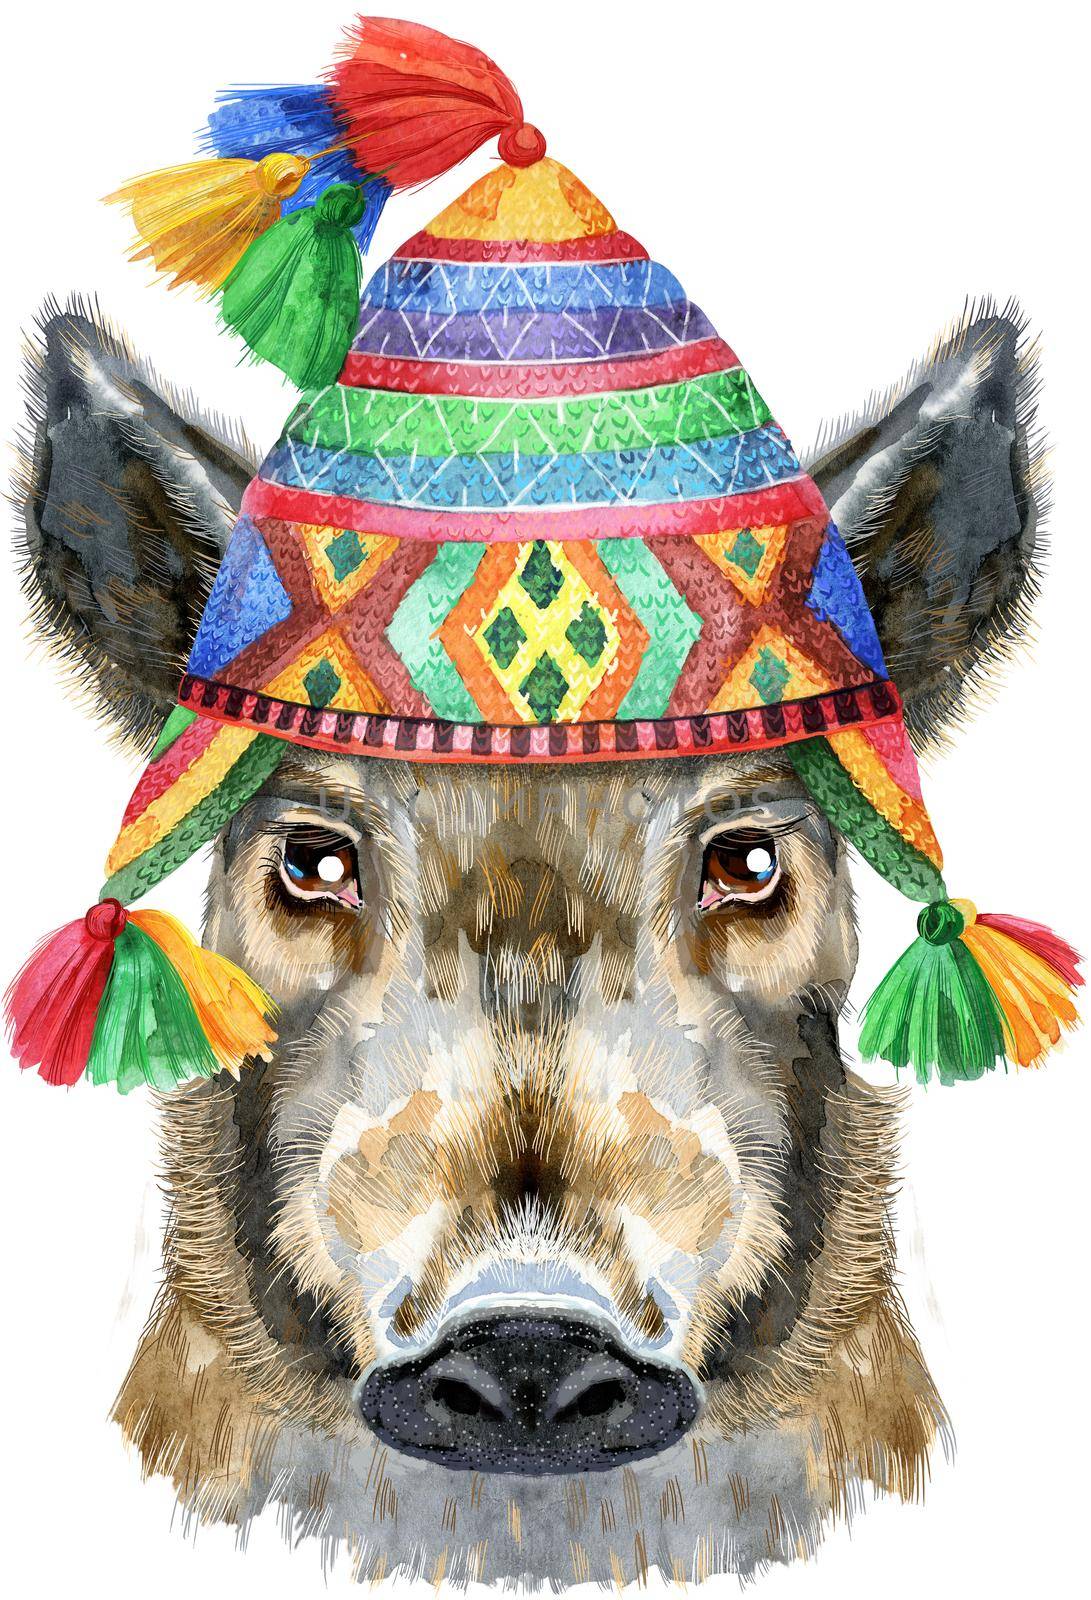 Watercolor portrait of wild boar in Peruvian chulo hat by NataOmsk